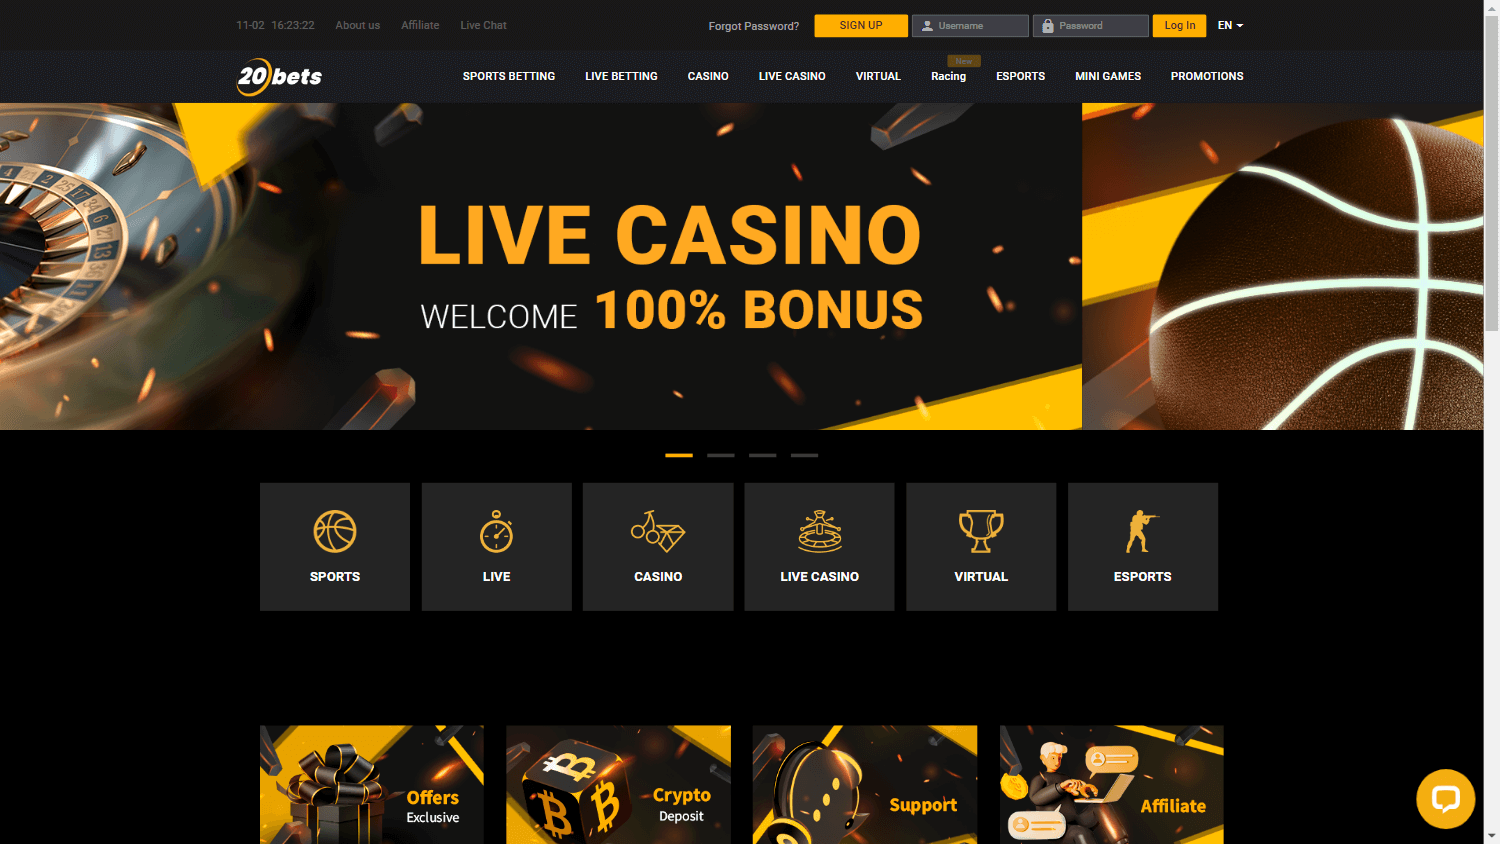 20bets_casino_homepage_desktop